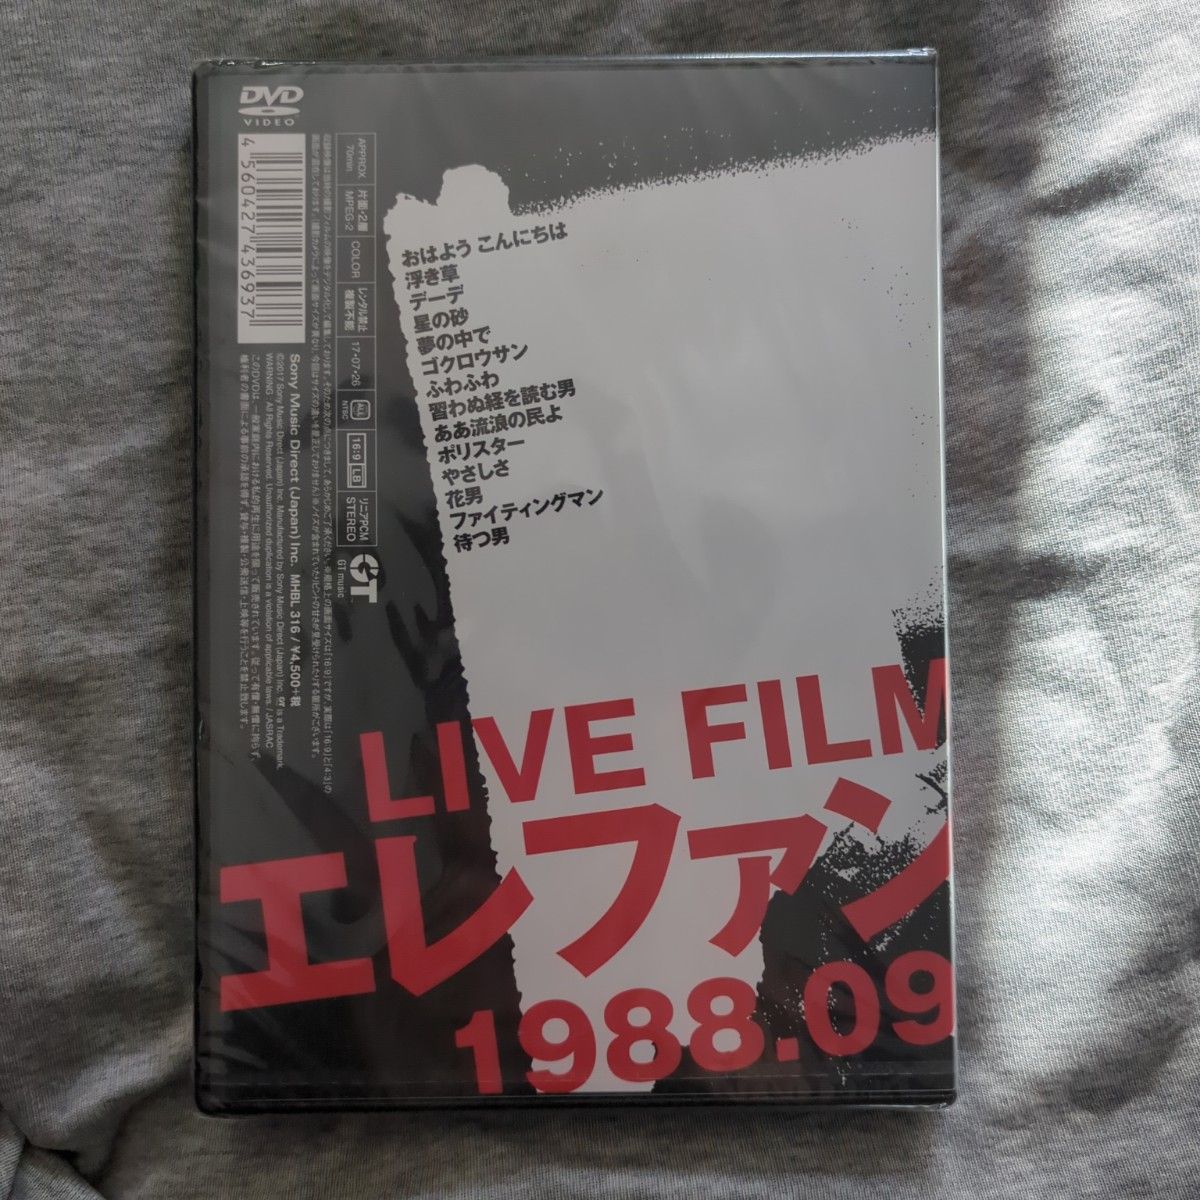 「エレファントカシマシ/LIVE FILM エレファントカシマシ 1988.09.10 渋谷公会堂」